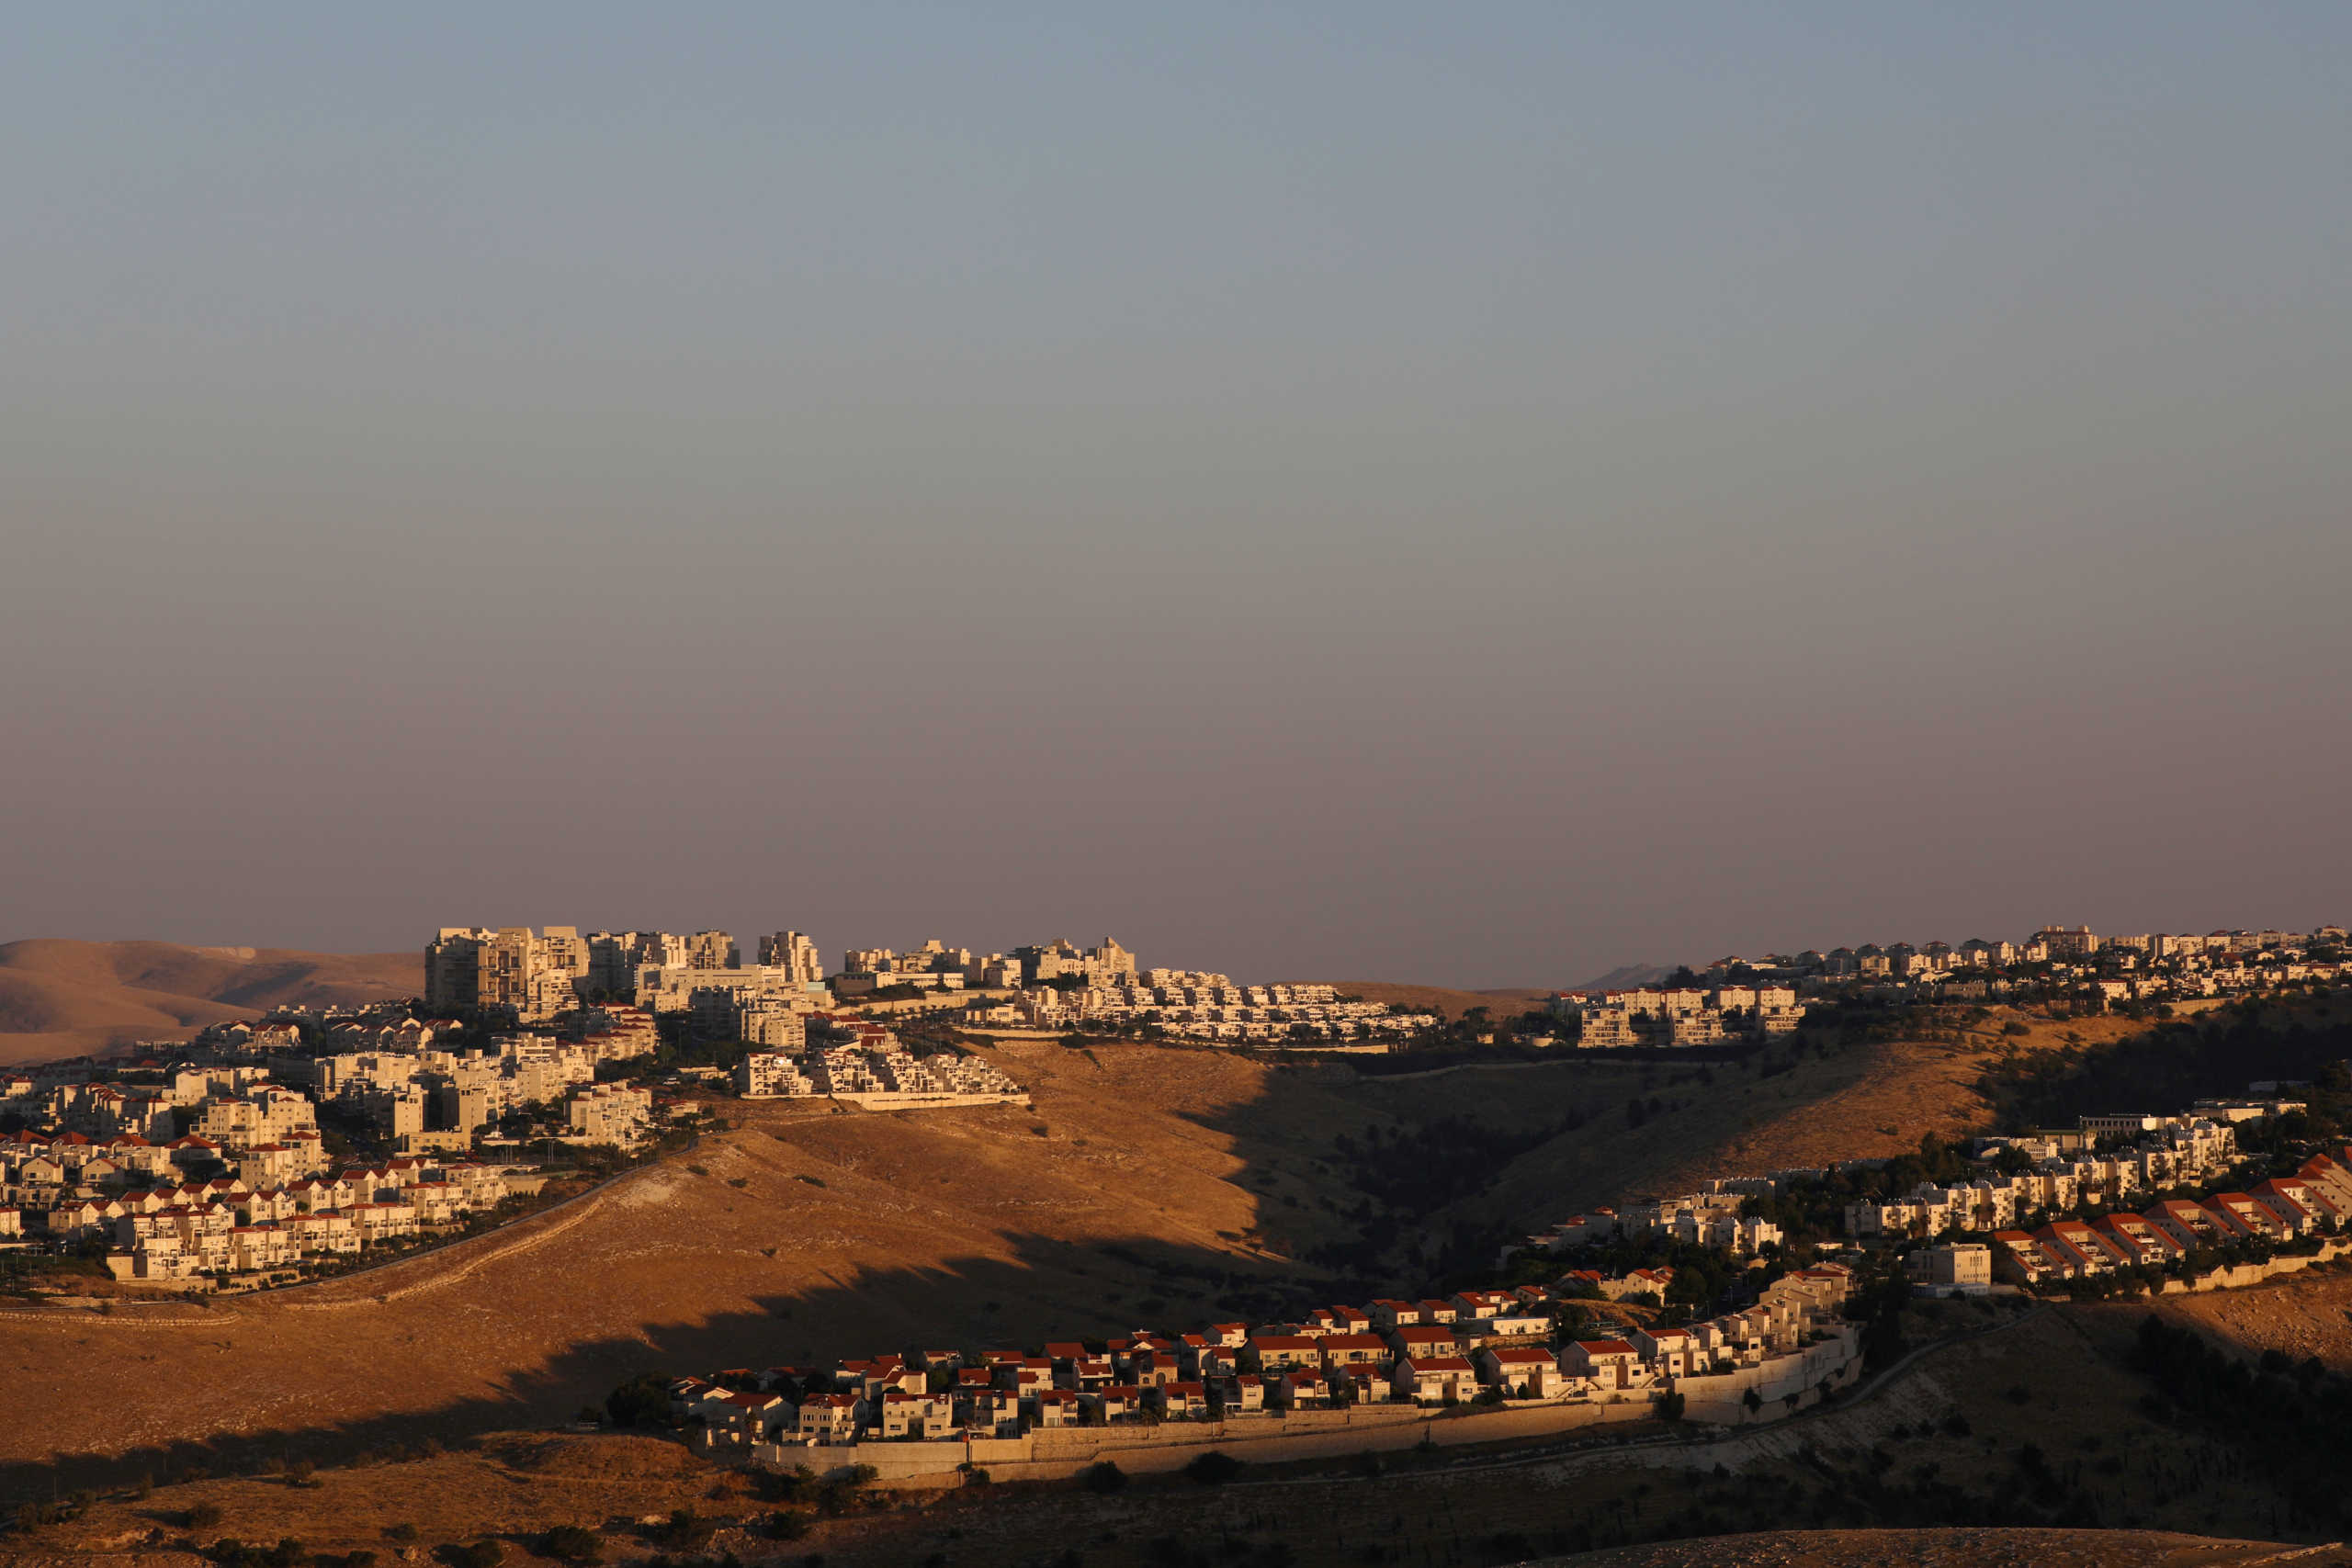 Δυτική Όχθη: Ίσως και σήμερα η προσάρτηση των εδαφών από το Ισραήλ –  Διαμαρτυρία από διεθνείς προσωπικότητες